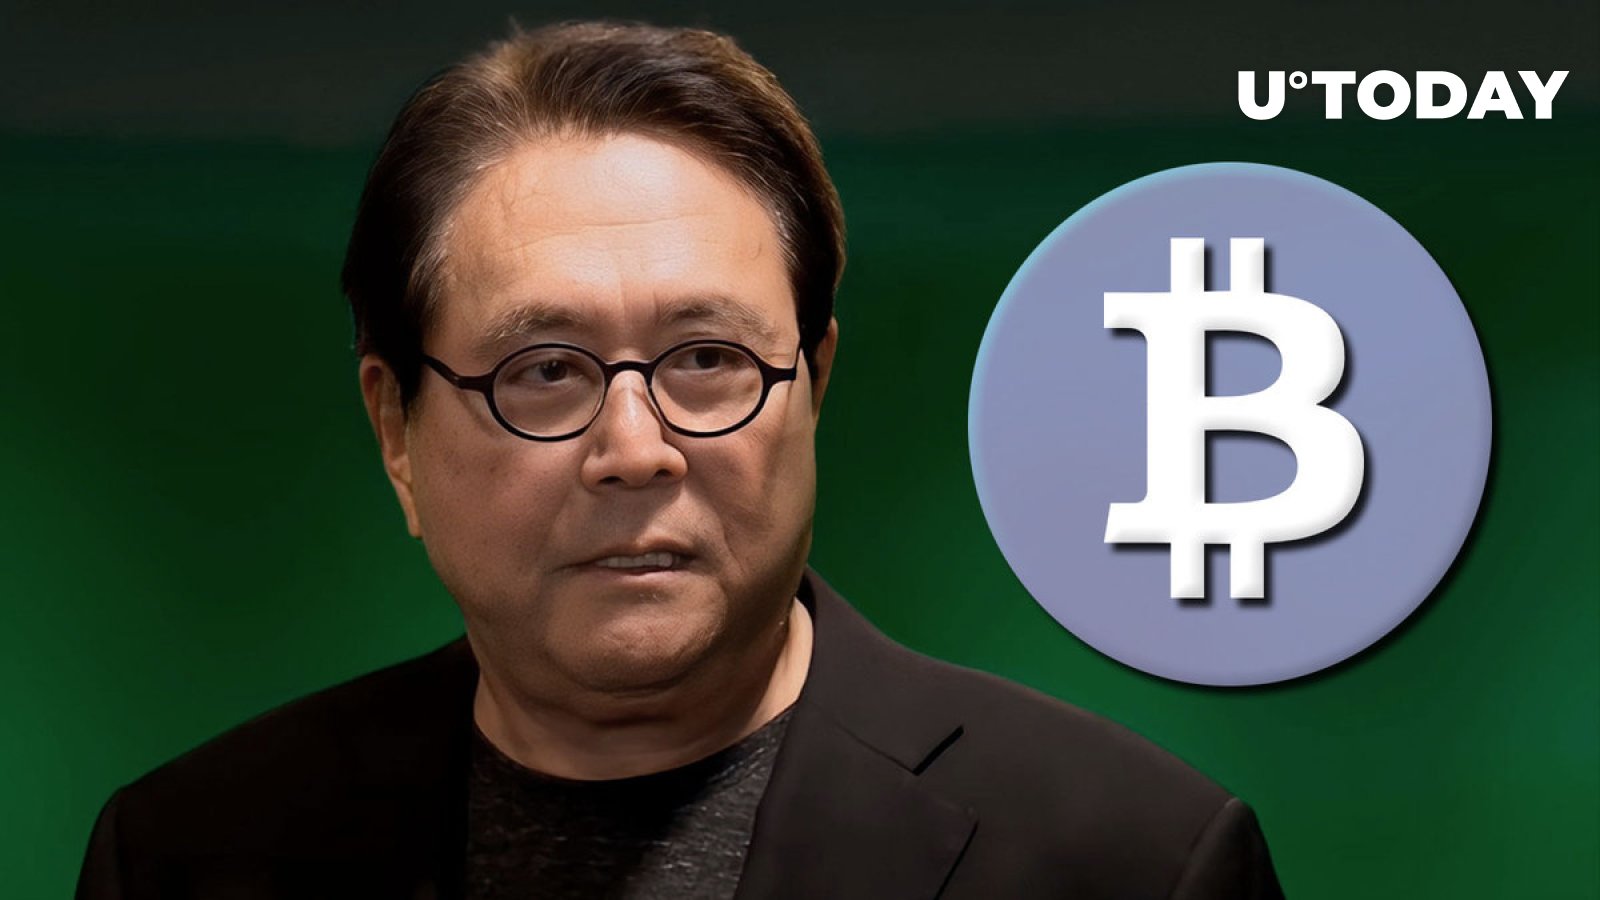 Robert Kiyosaki Buys More Bitcoin Right Now, Here’s Why